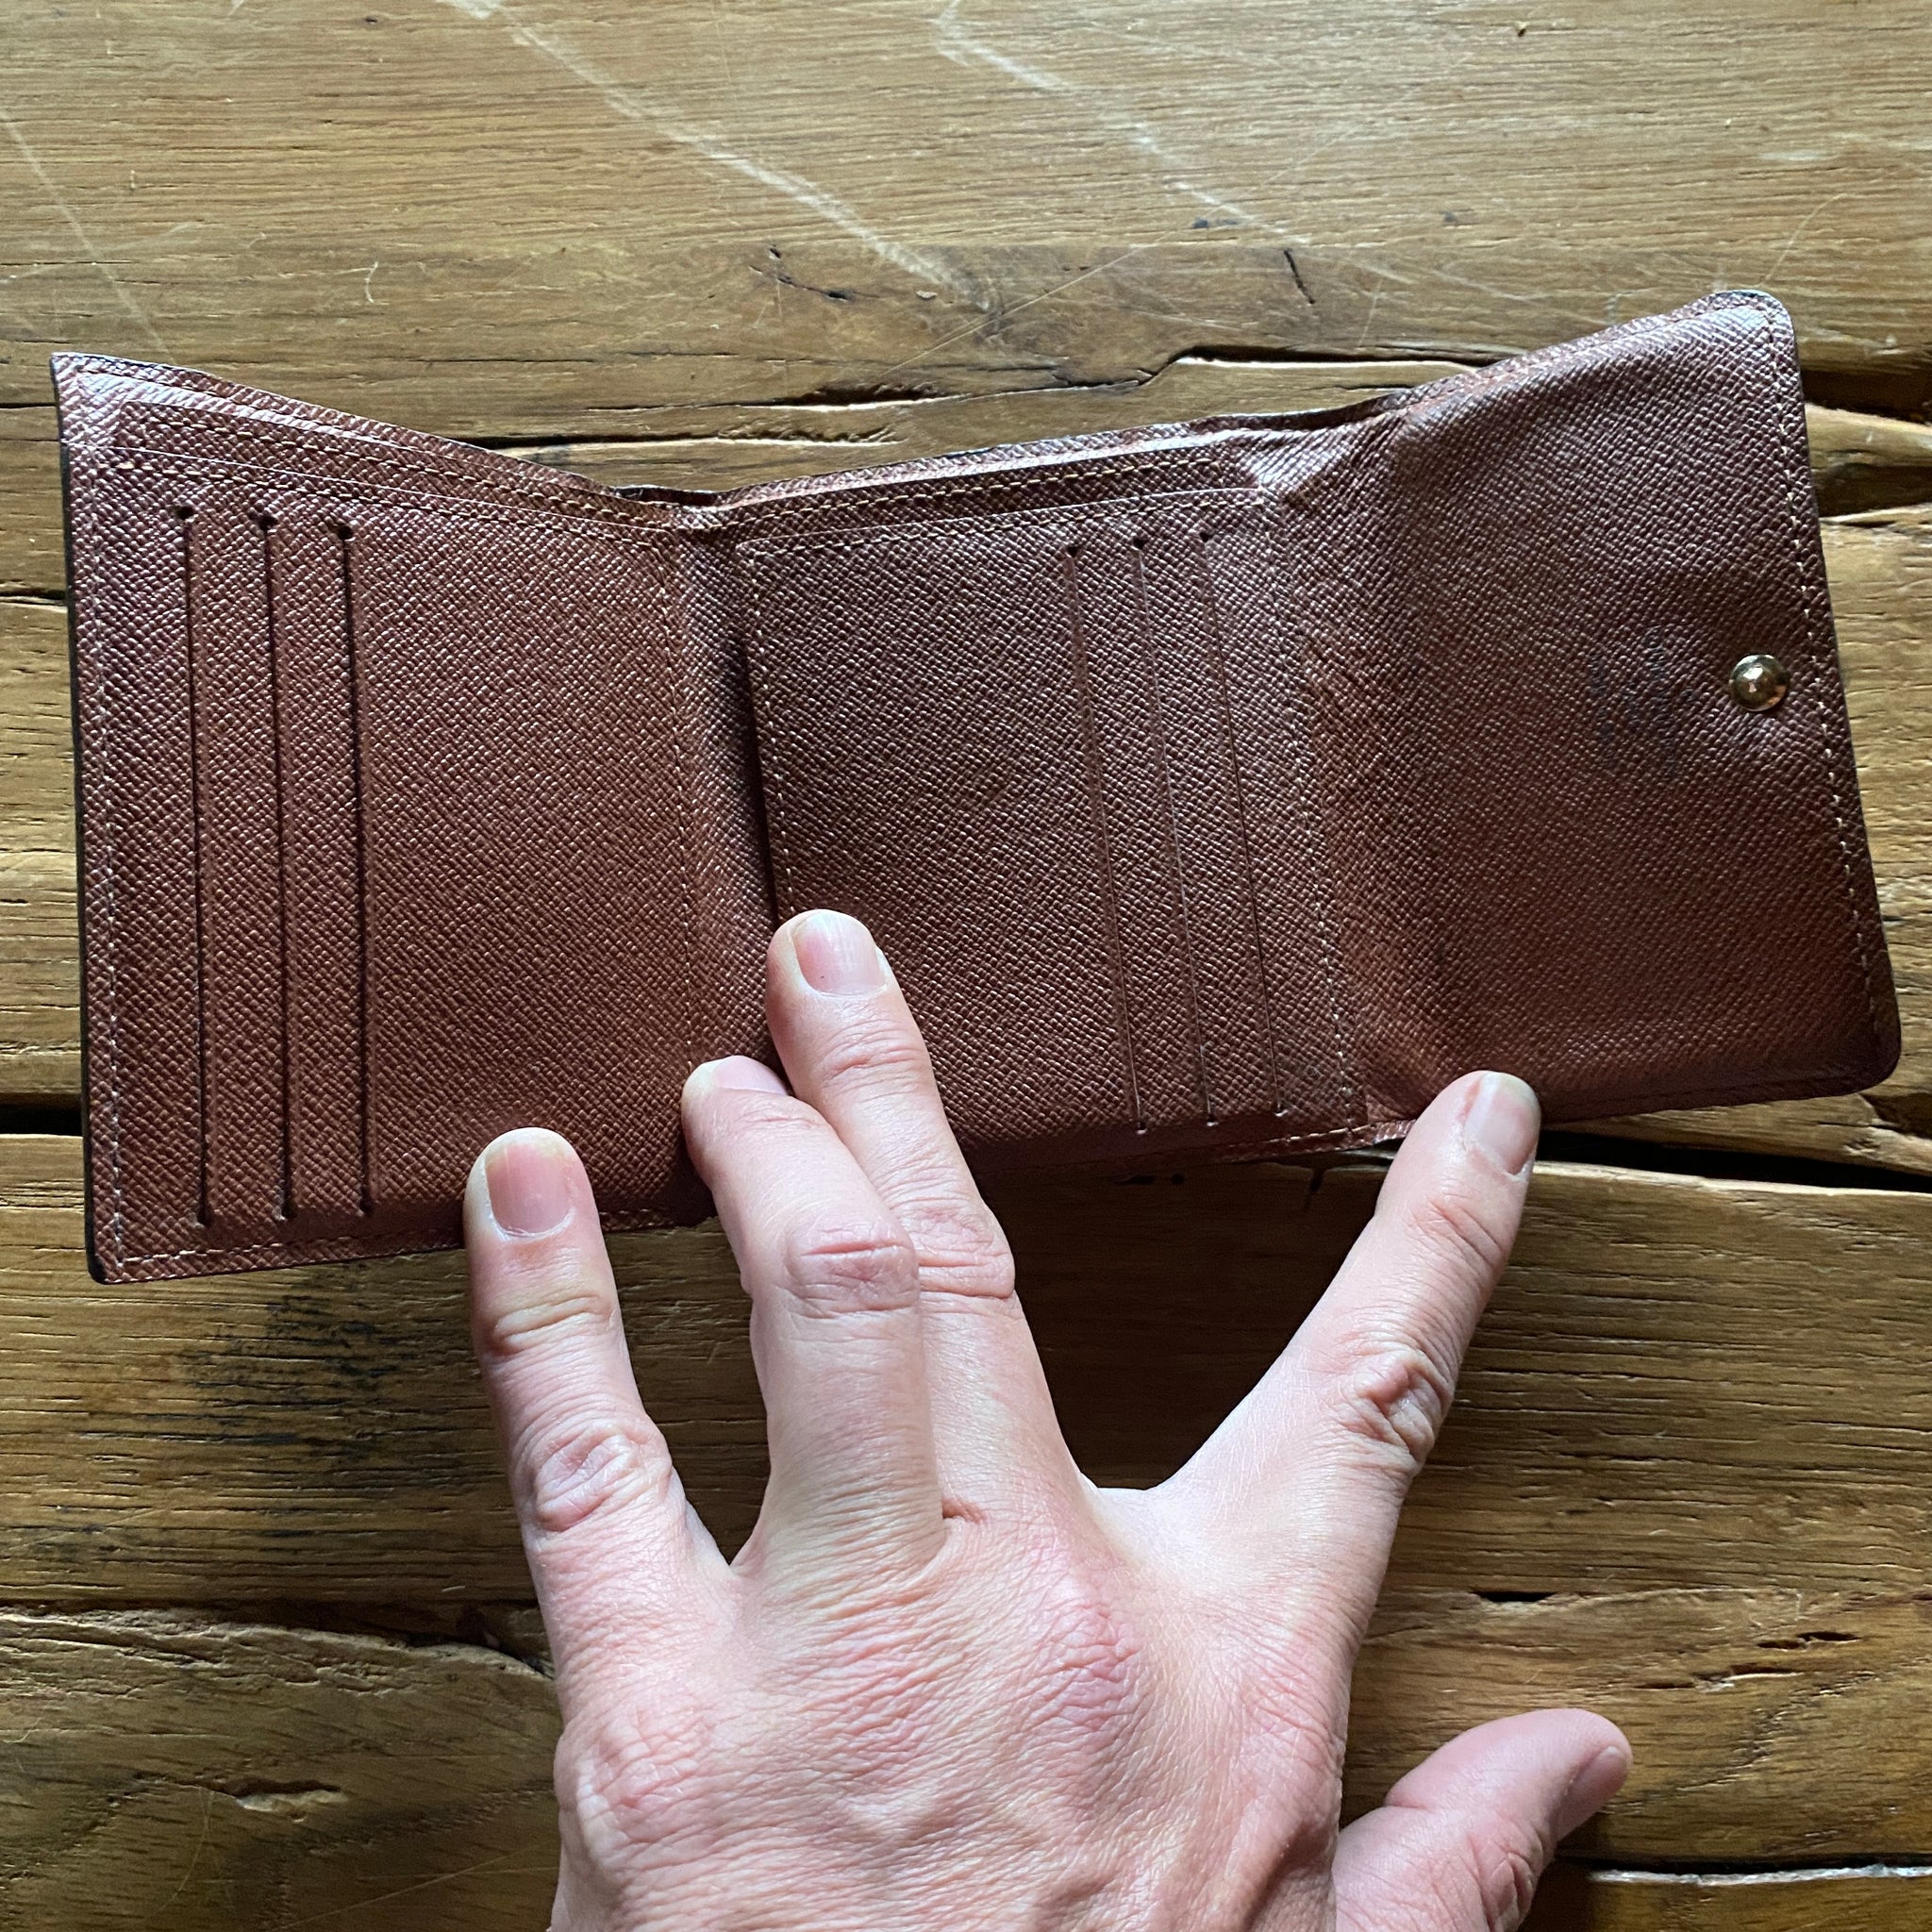 anais compact wallet